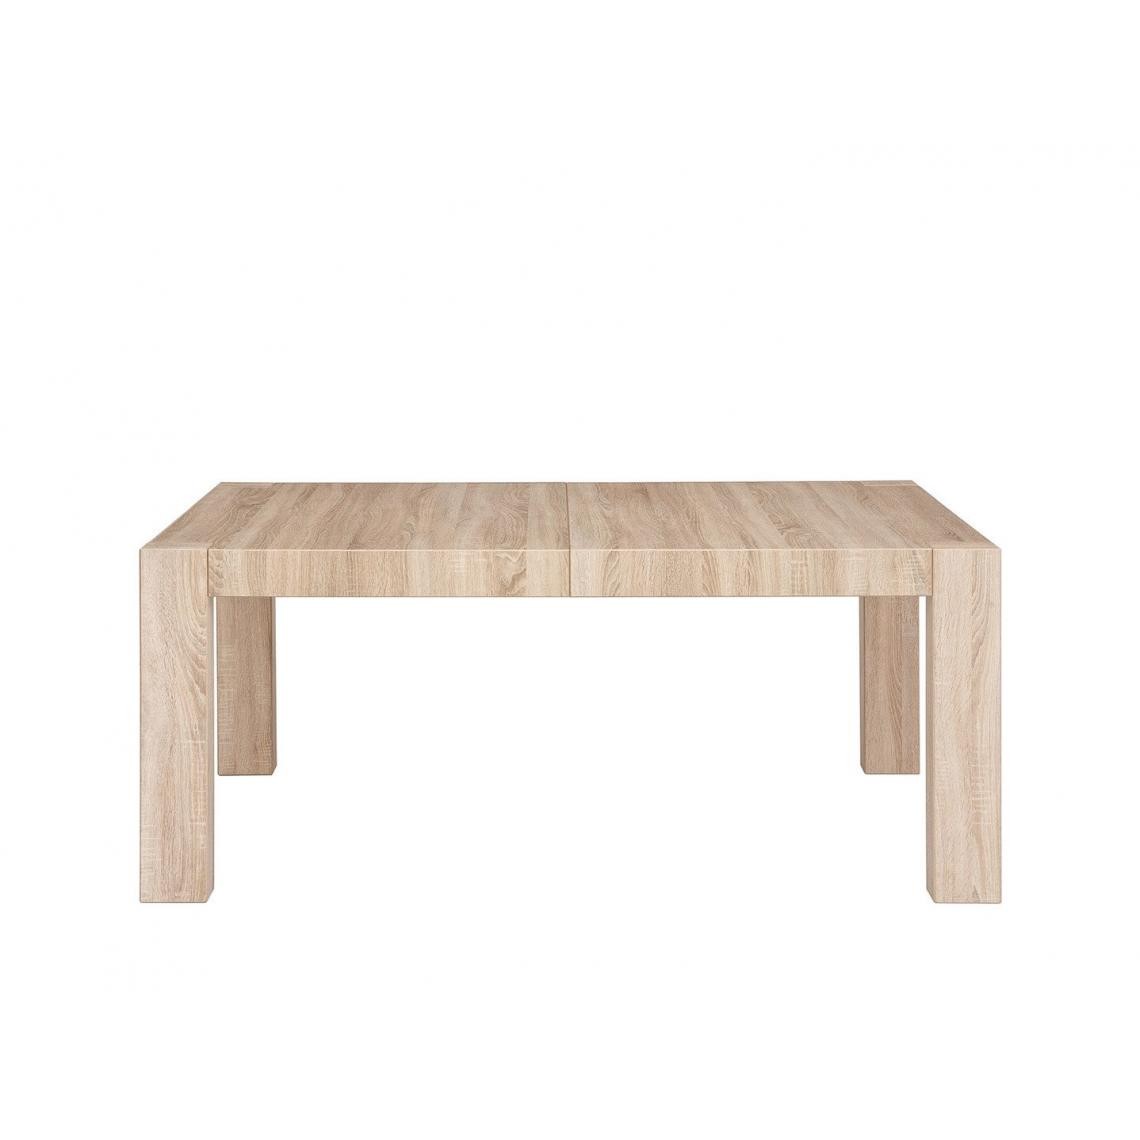 Hucoco - IMPREZZI - Table rectangulaire salon cuisine salle à manger - Style scandinave - 137.5x80x78 cm - Format compact - Sonoma - Tables à manger